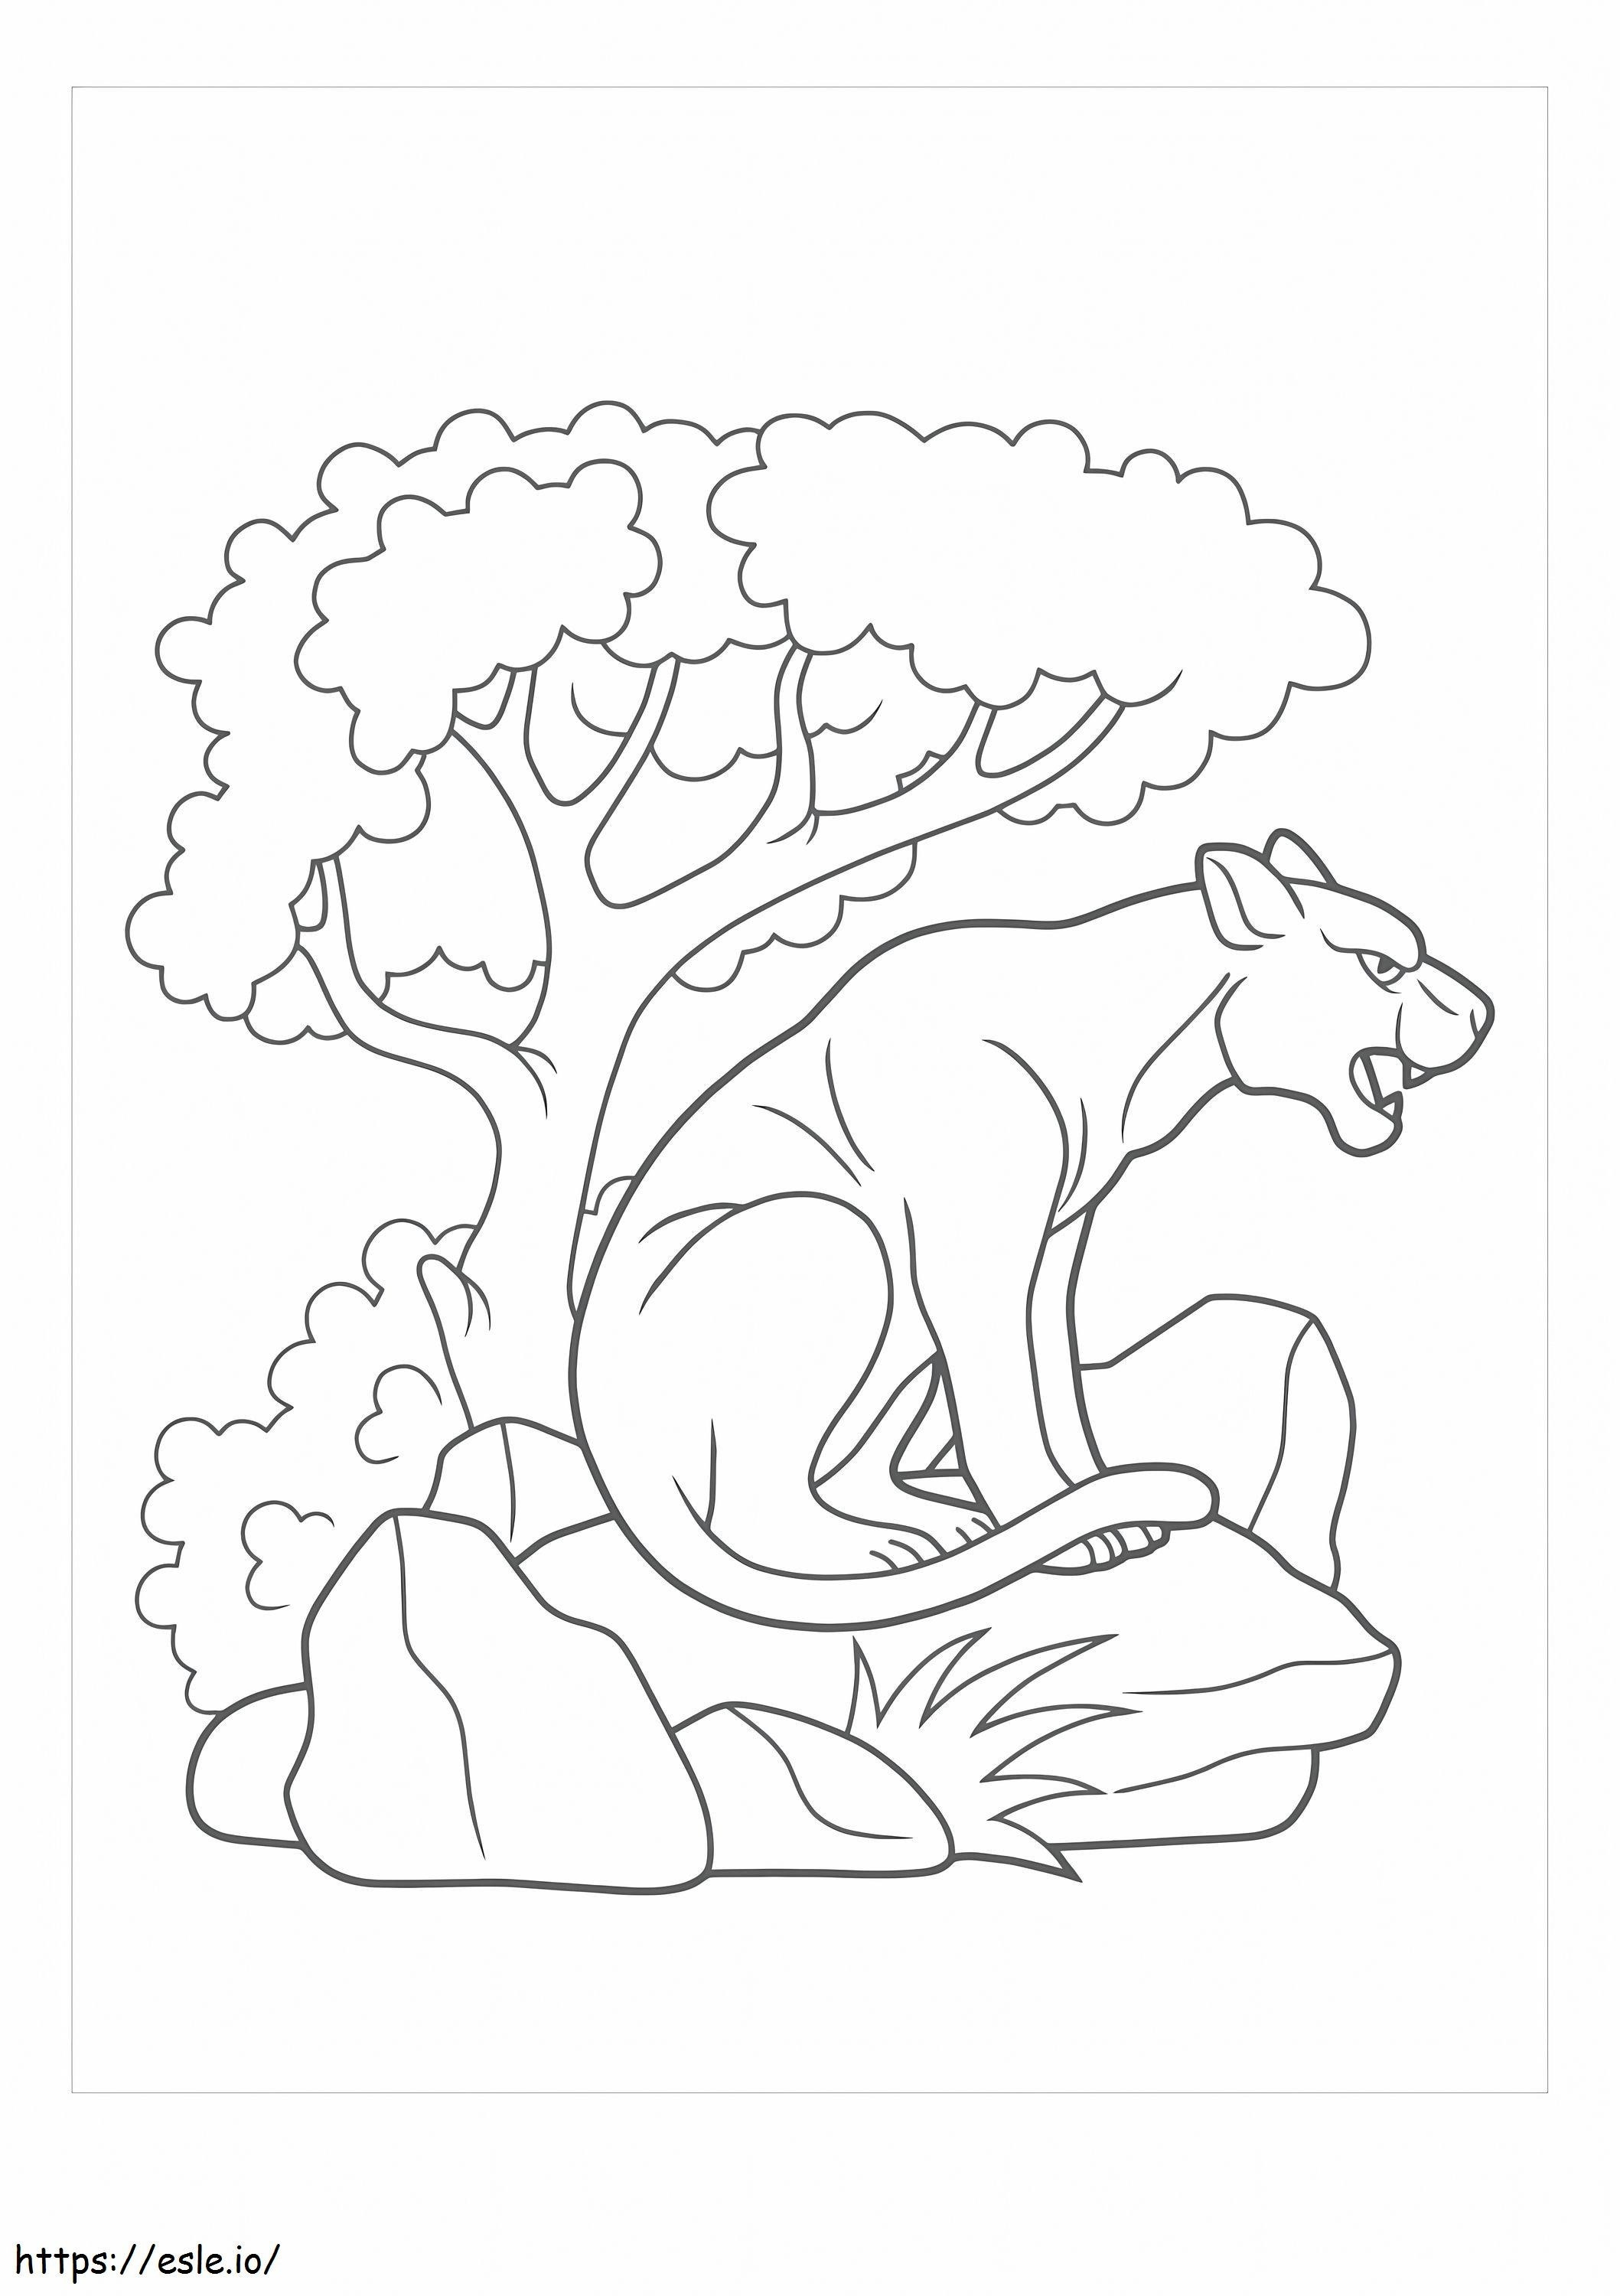 puma sentado na rocha para colorir